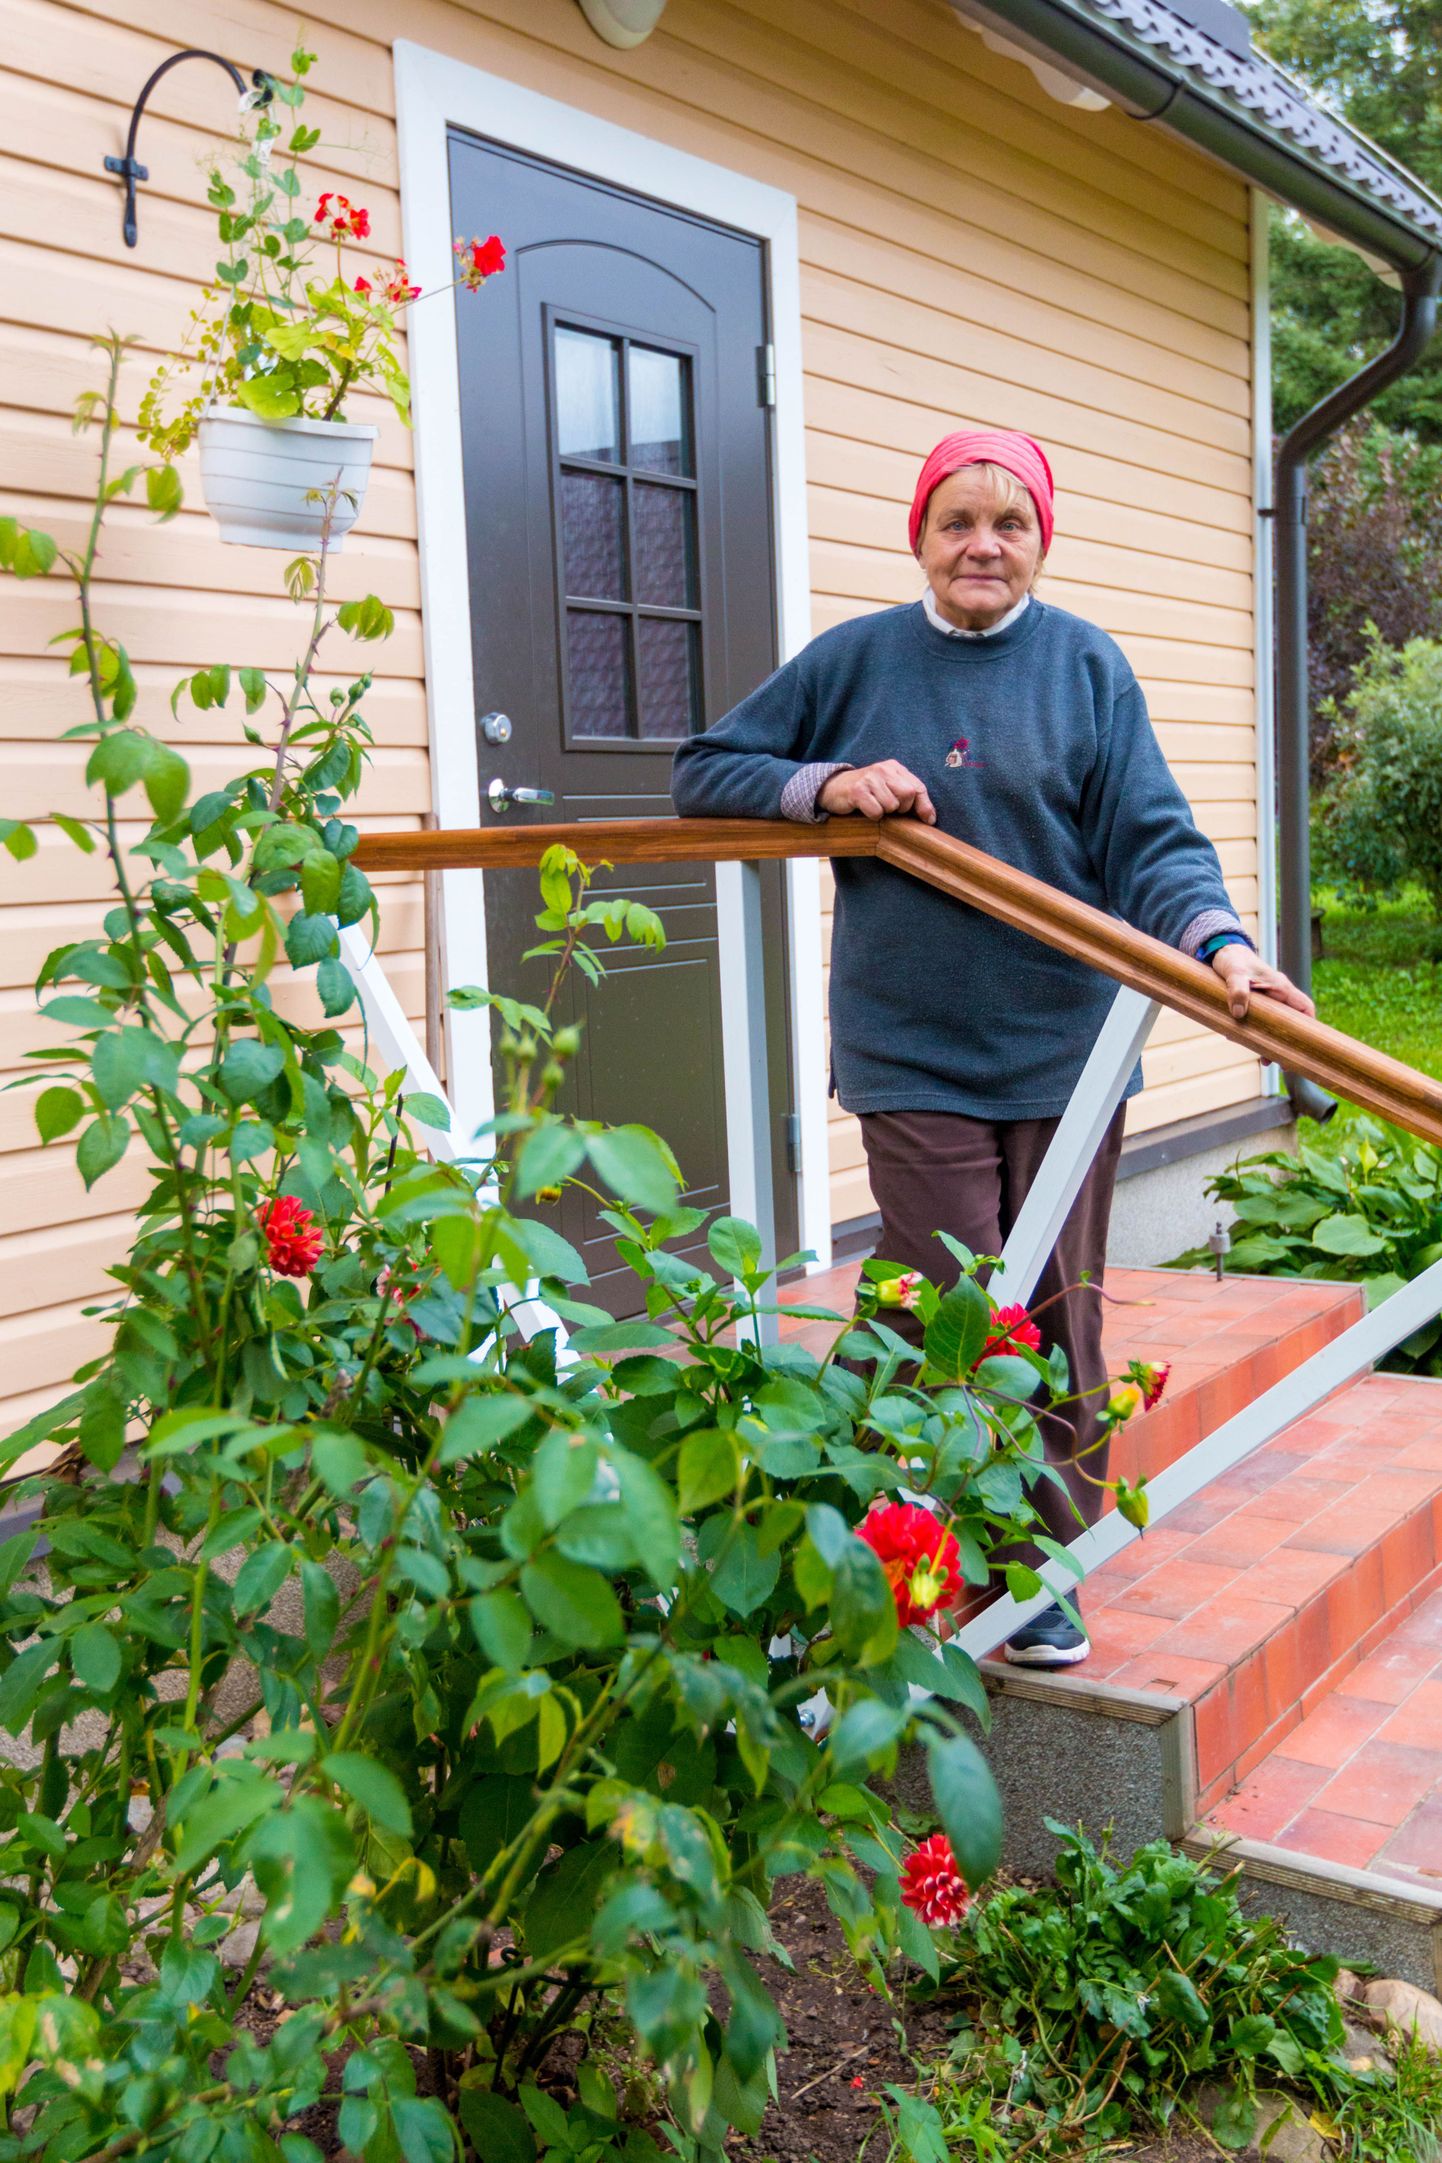 Üle 50 aasta Valgas lastearstina töötanud 76aastane Aasa Põder on oma missiooniks võtnud jätkata abikaasa vanemate talu arendamist. Aias kasvab tal ohtralt lilli, mis pakuvad avastamisrõõmu ja silmailu.